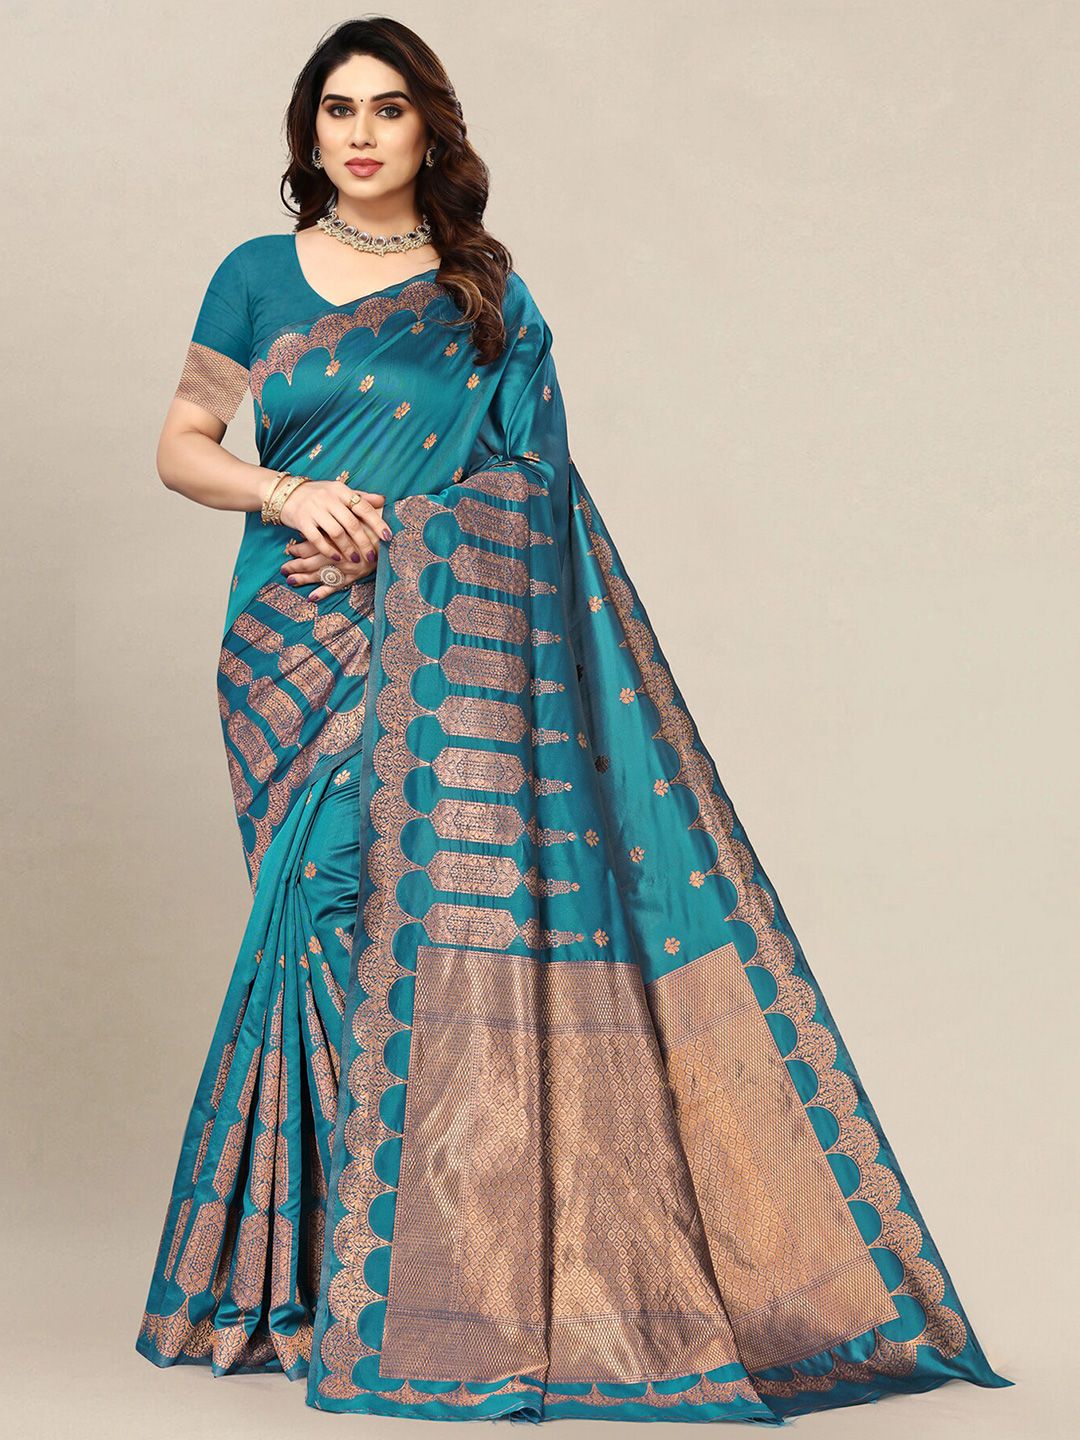 Om Shantam Sarees Woven Design Zari Banarasi Saree Price in India